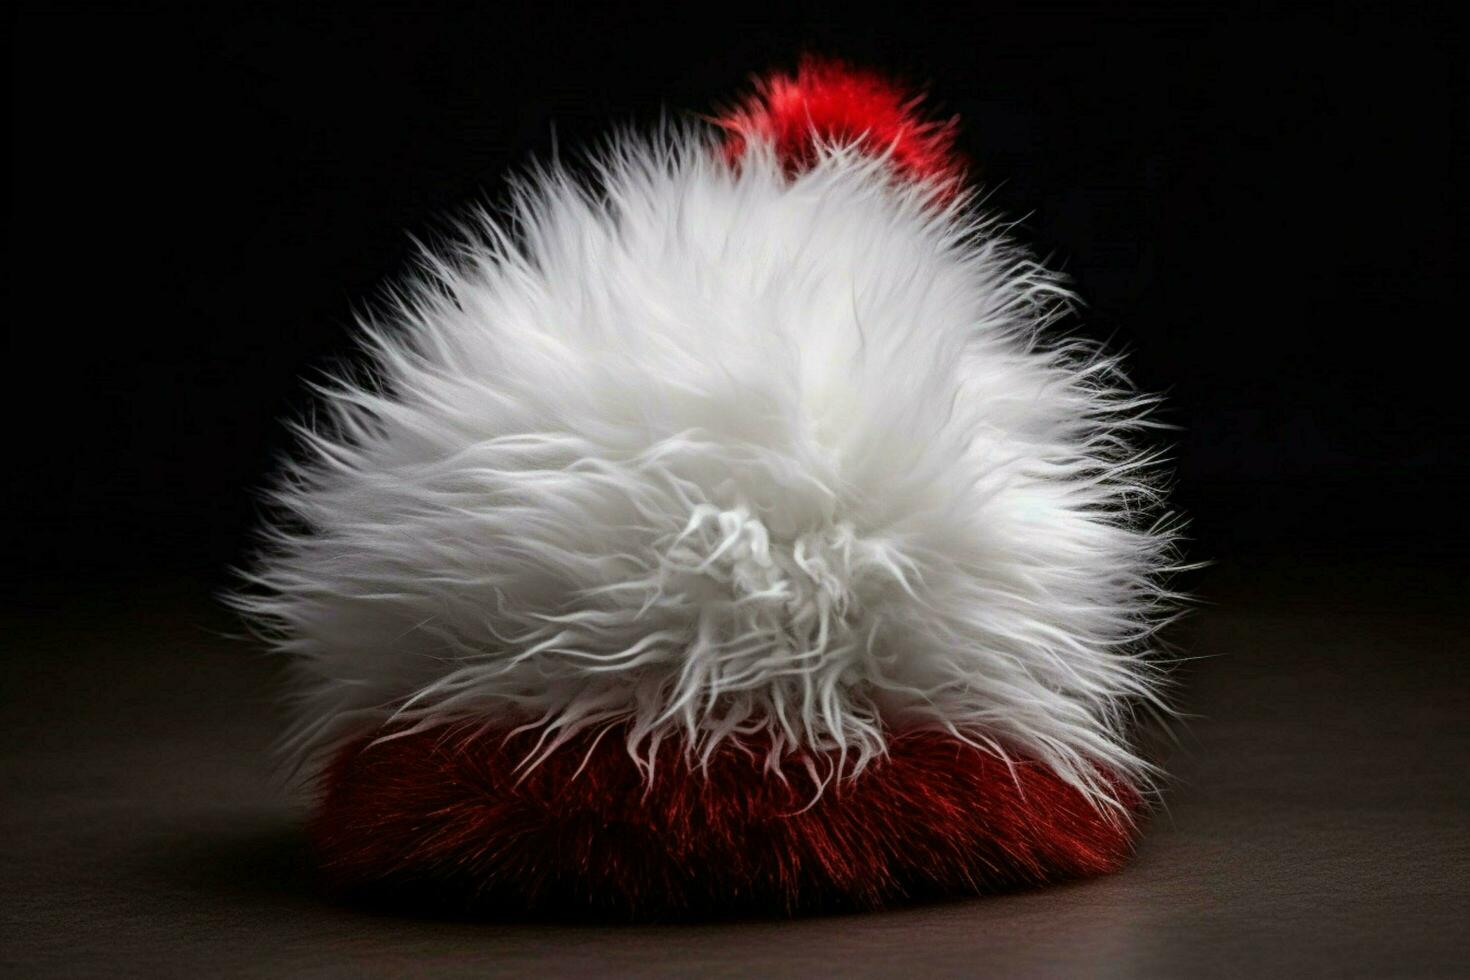 A Santa hat with a fluffy white pom-pom photo